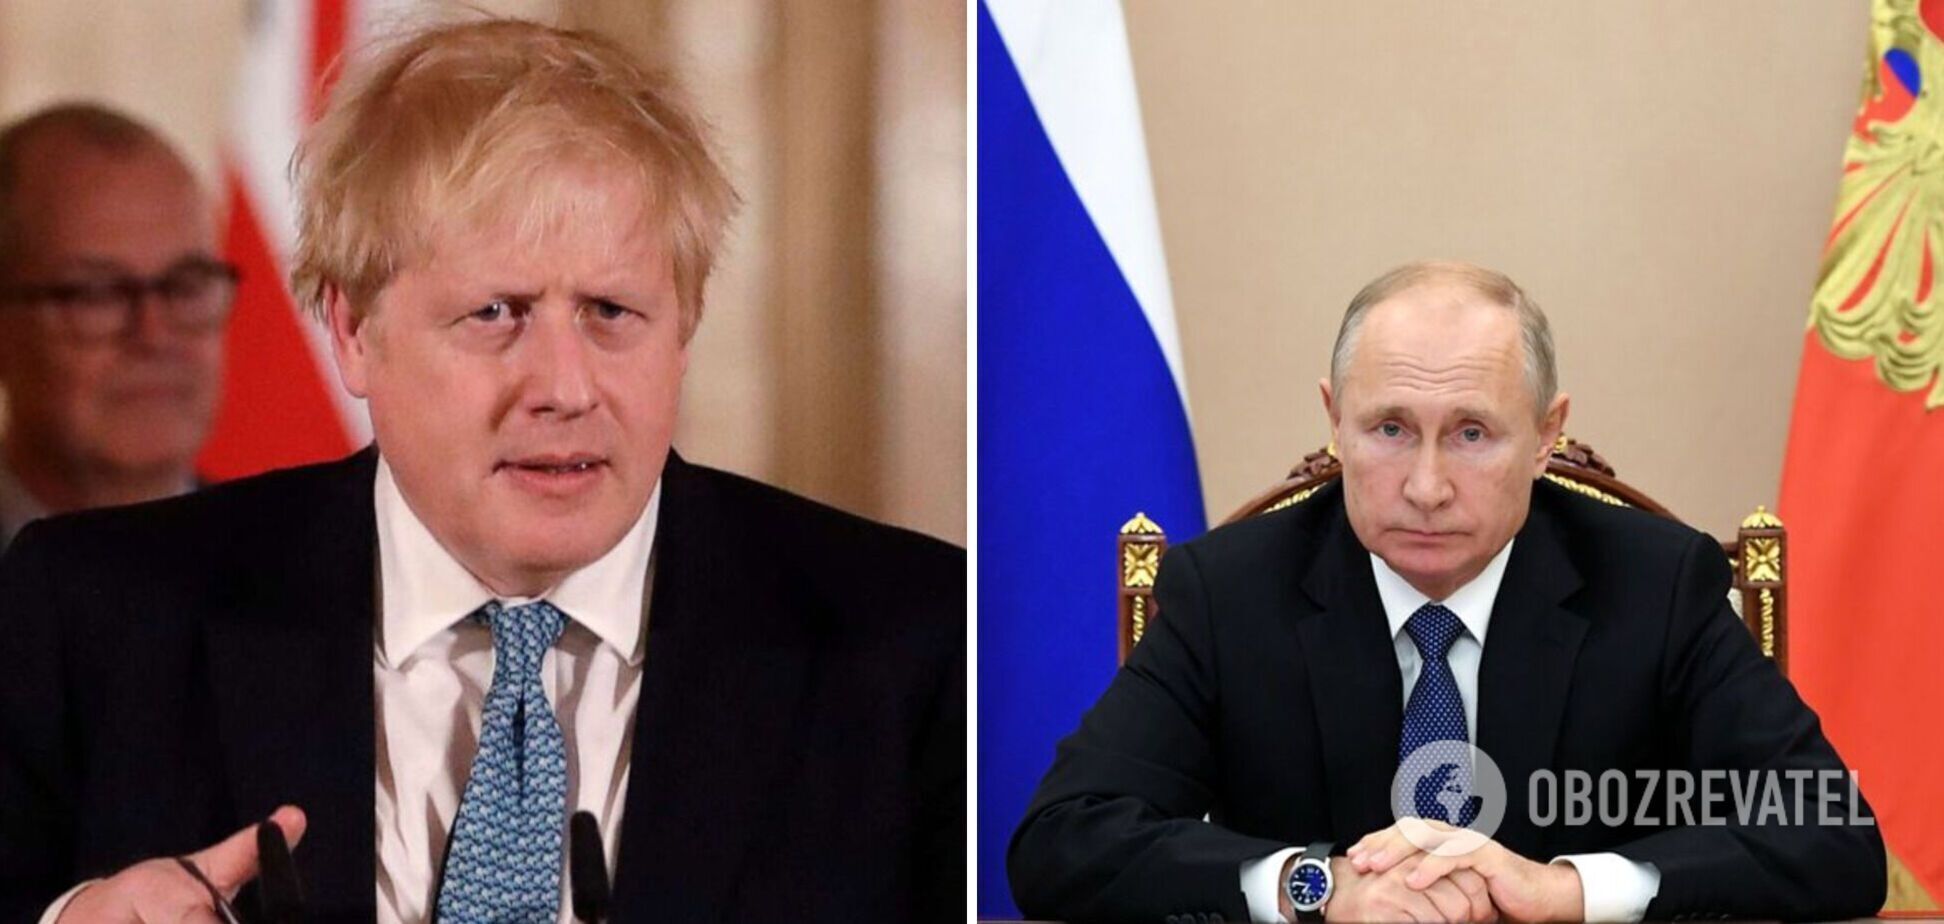 "Становится не по себе": в Кремле отреагировали на заявление Джонсона относительно угроз ракетным ударом